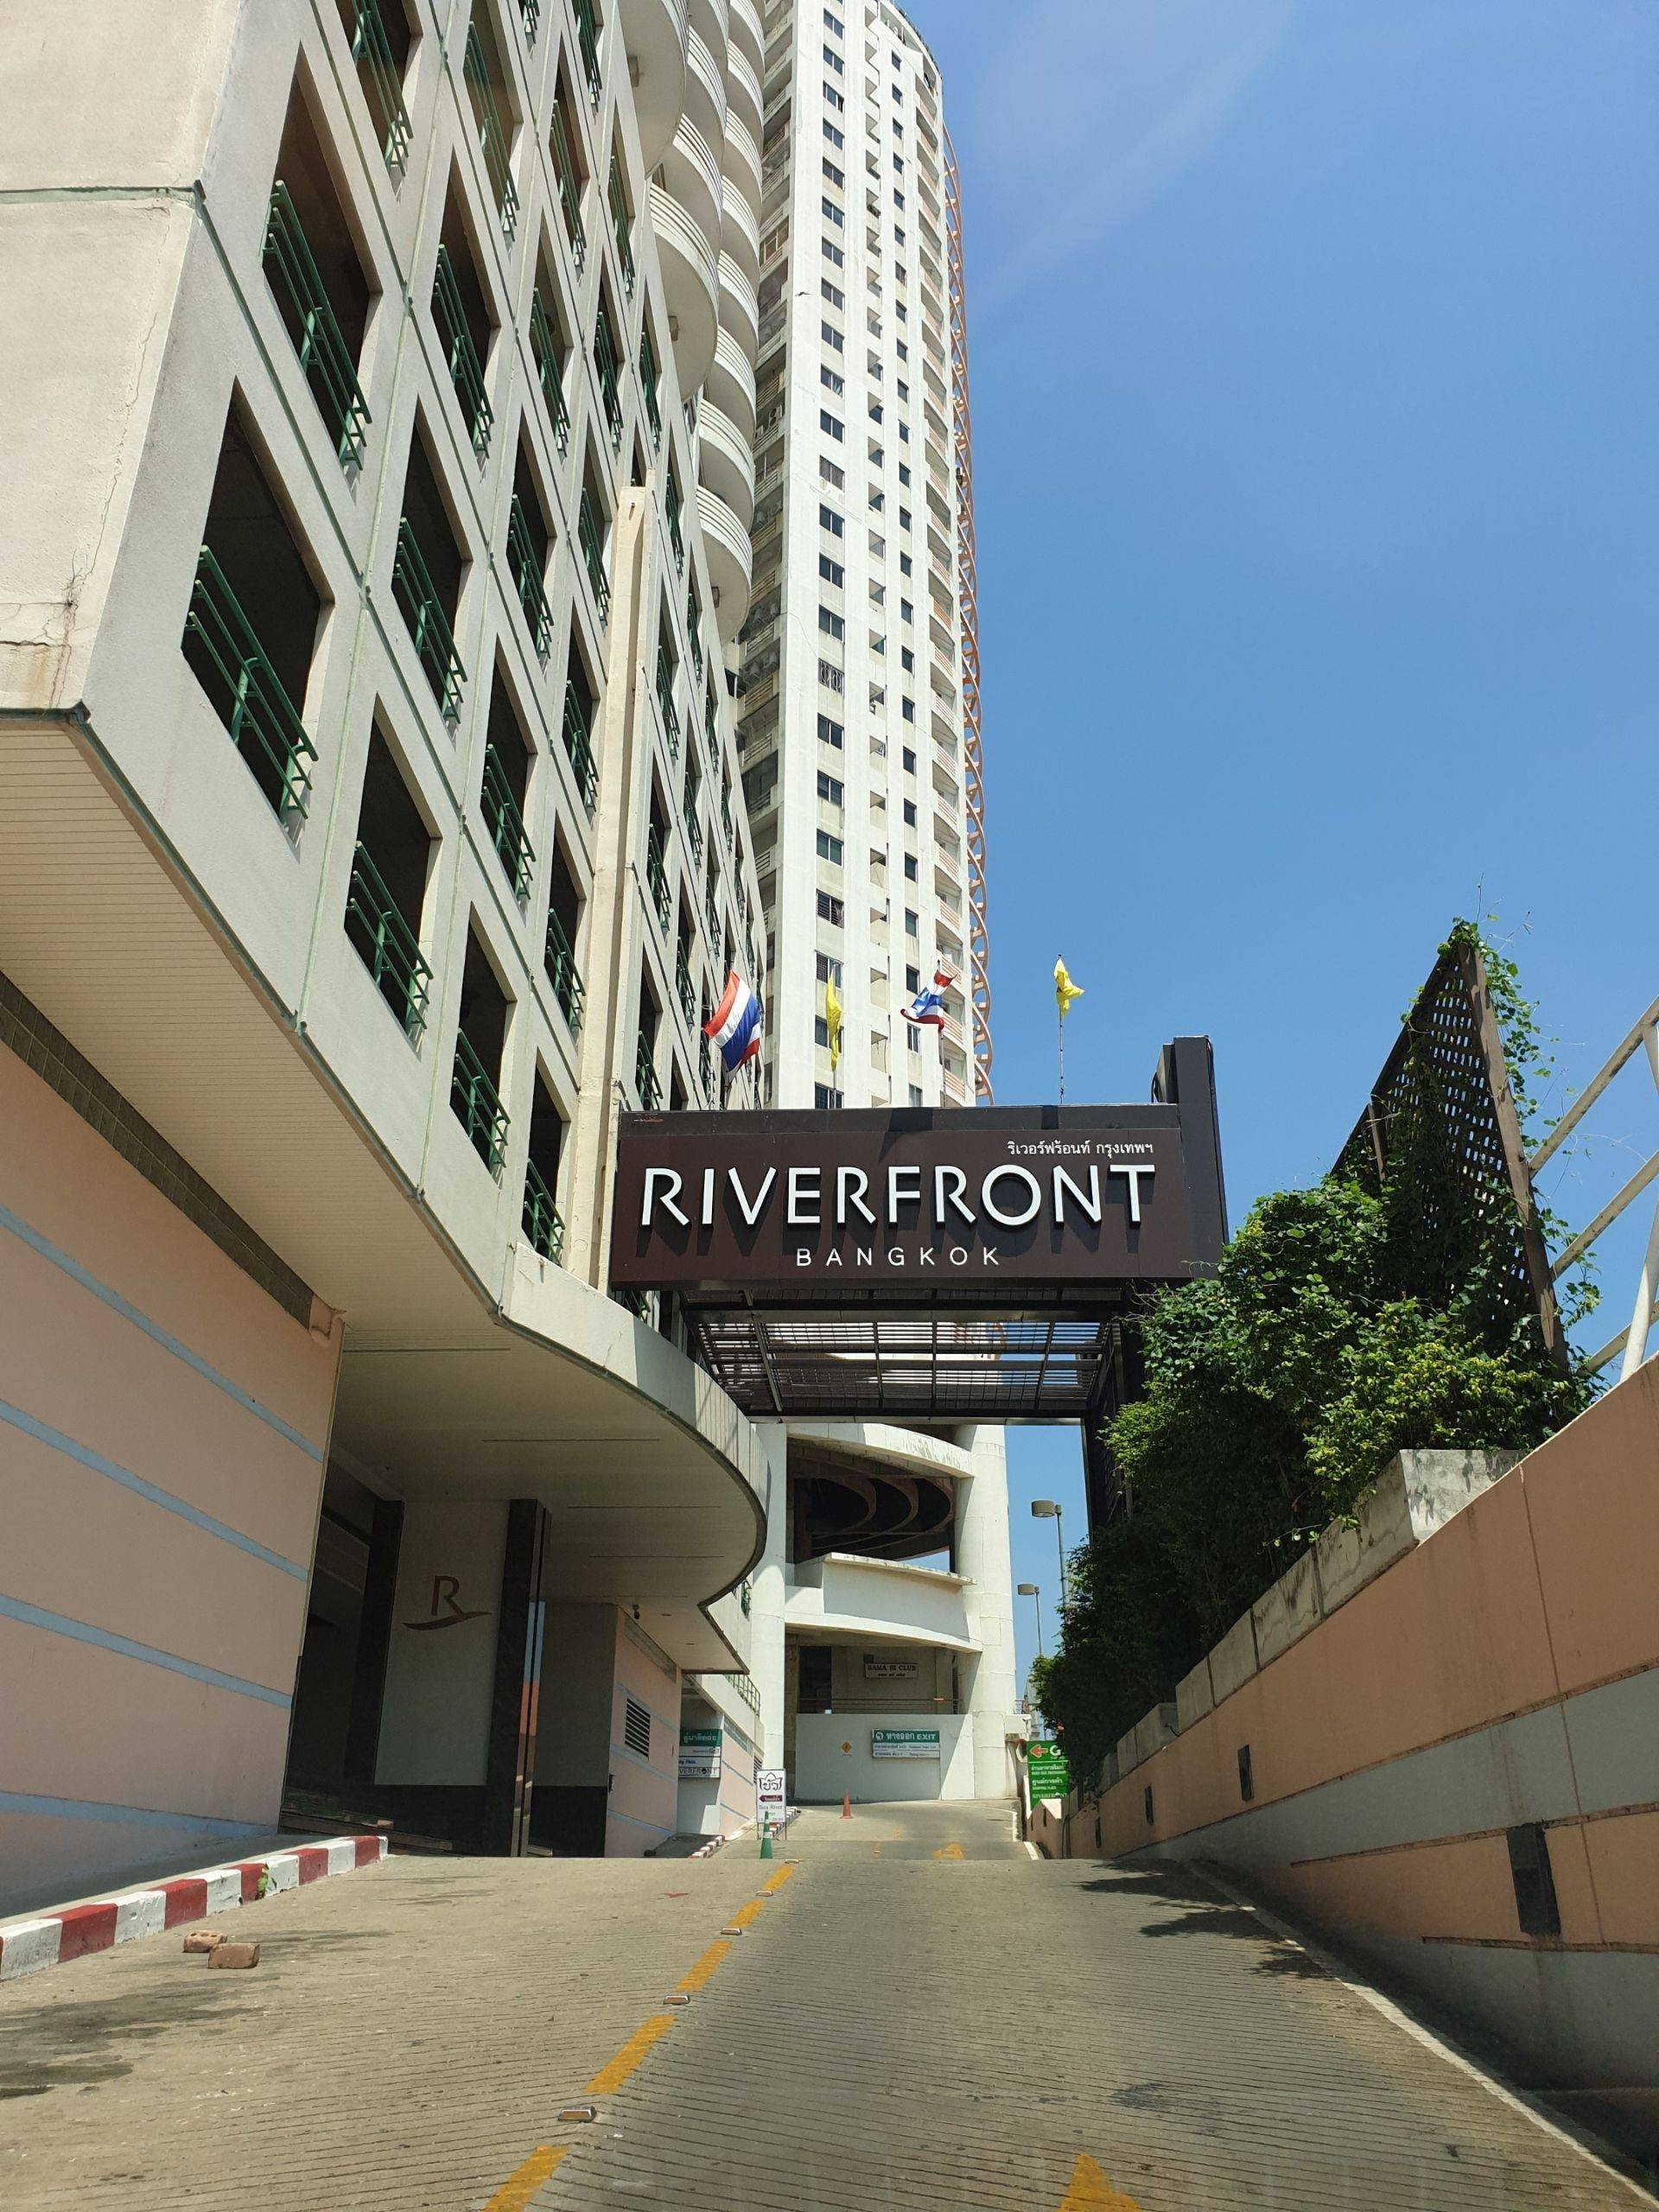 รีวิว Riverfront Residence - วิวสวย ถึงสวยที่สุด  แต่มันไม่ได้อารมณ์เหมือนโรงแรม - Wongnai